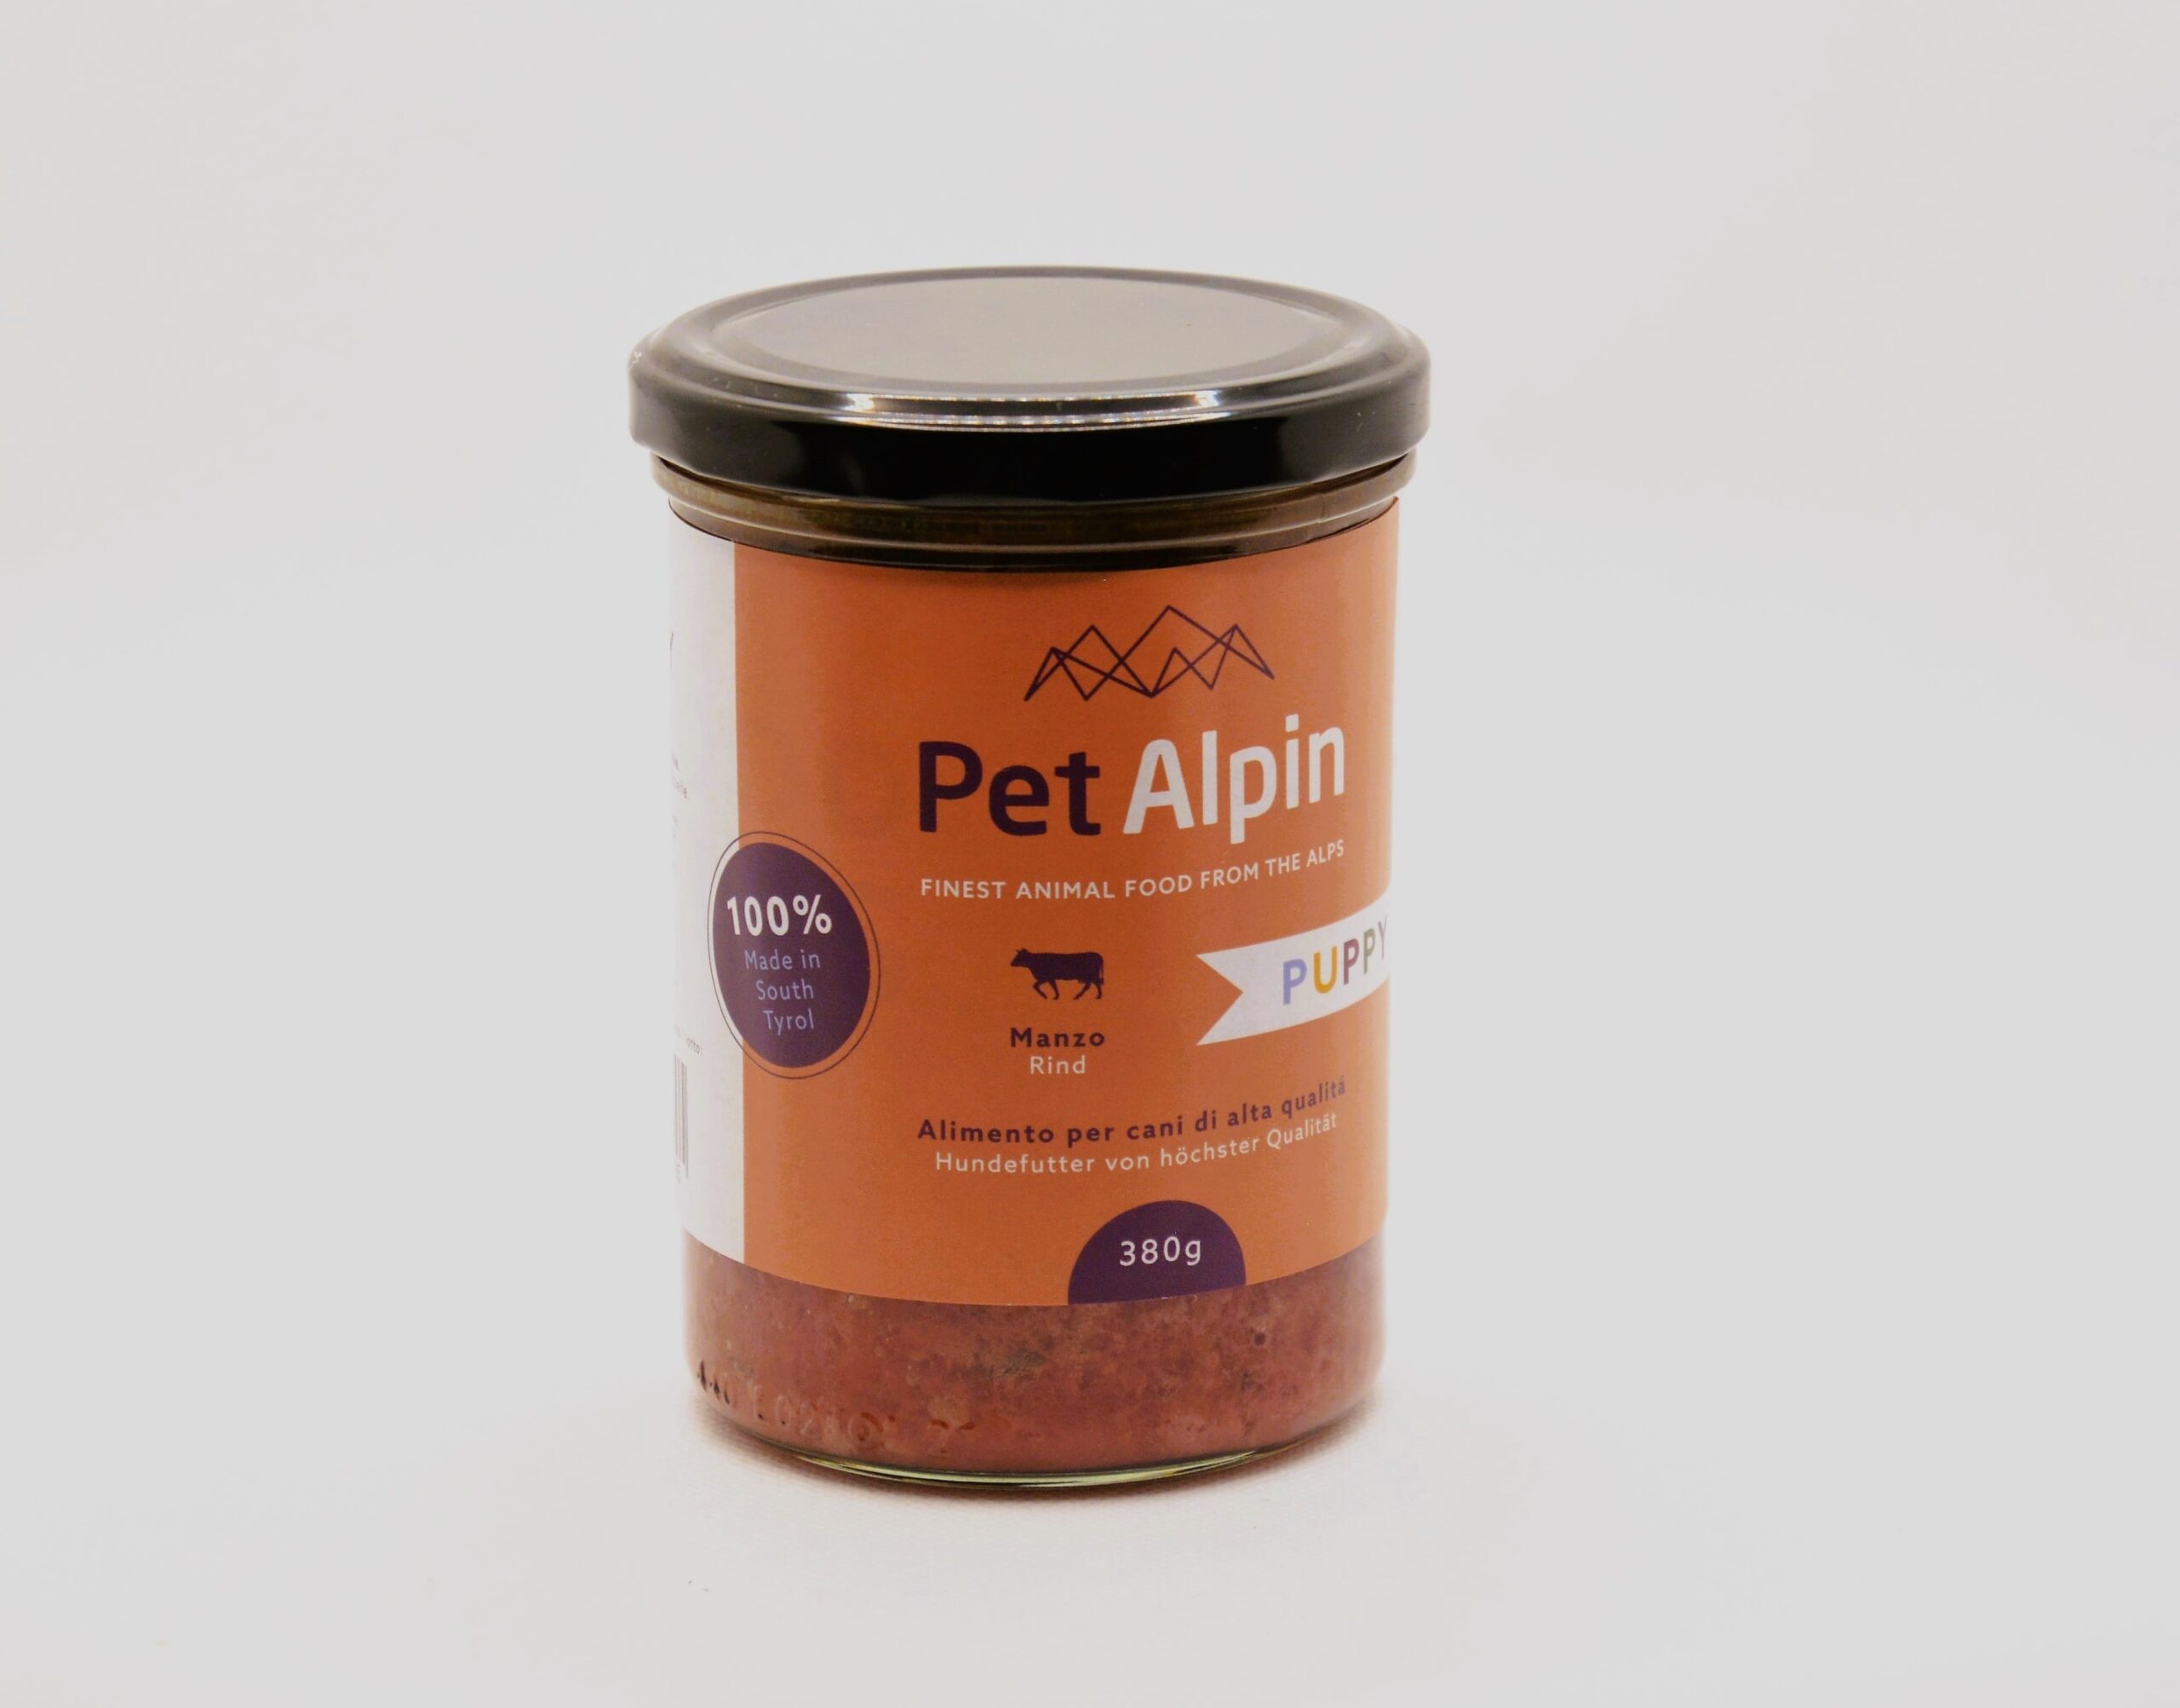 Pet Alpin Gulasch Puppy Rind 380g